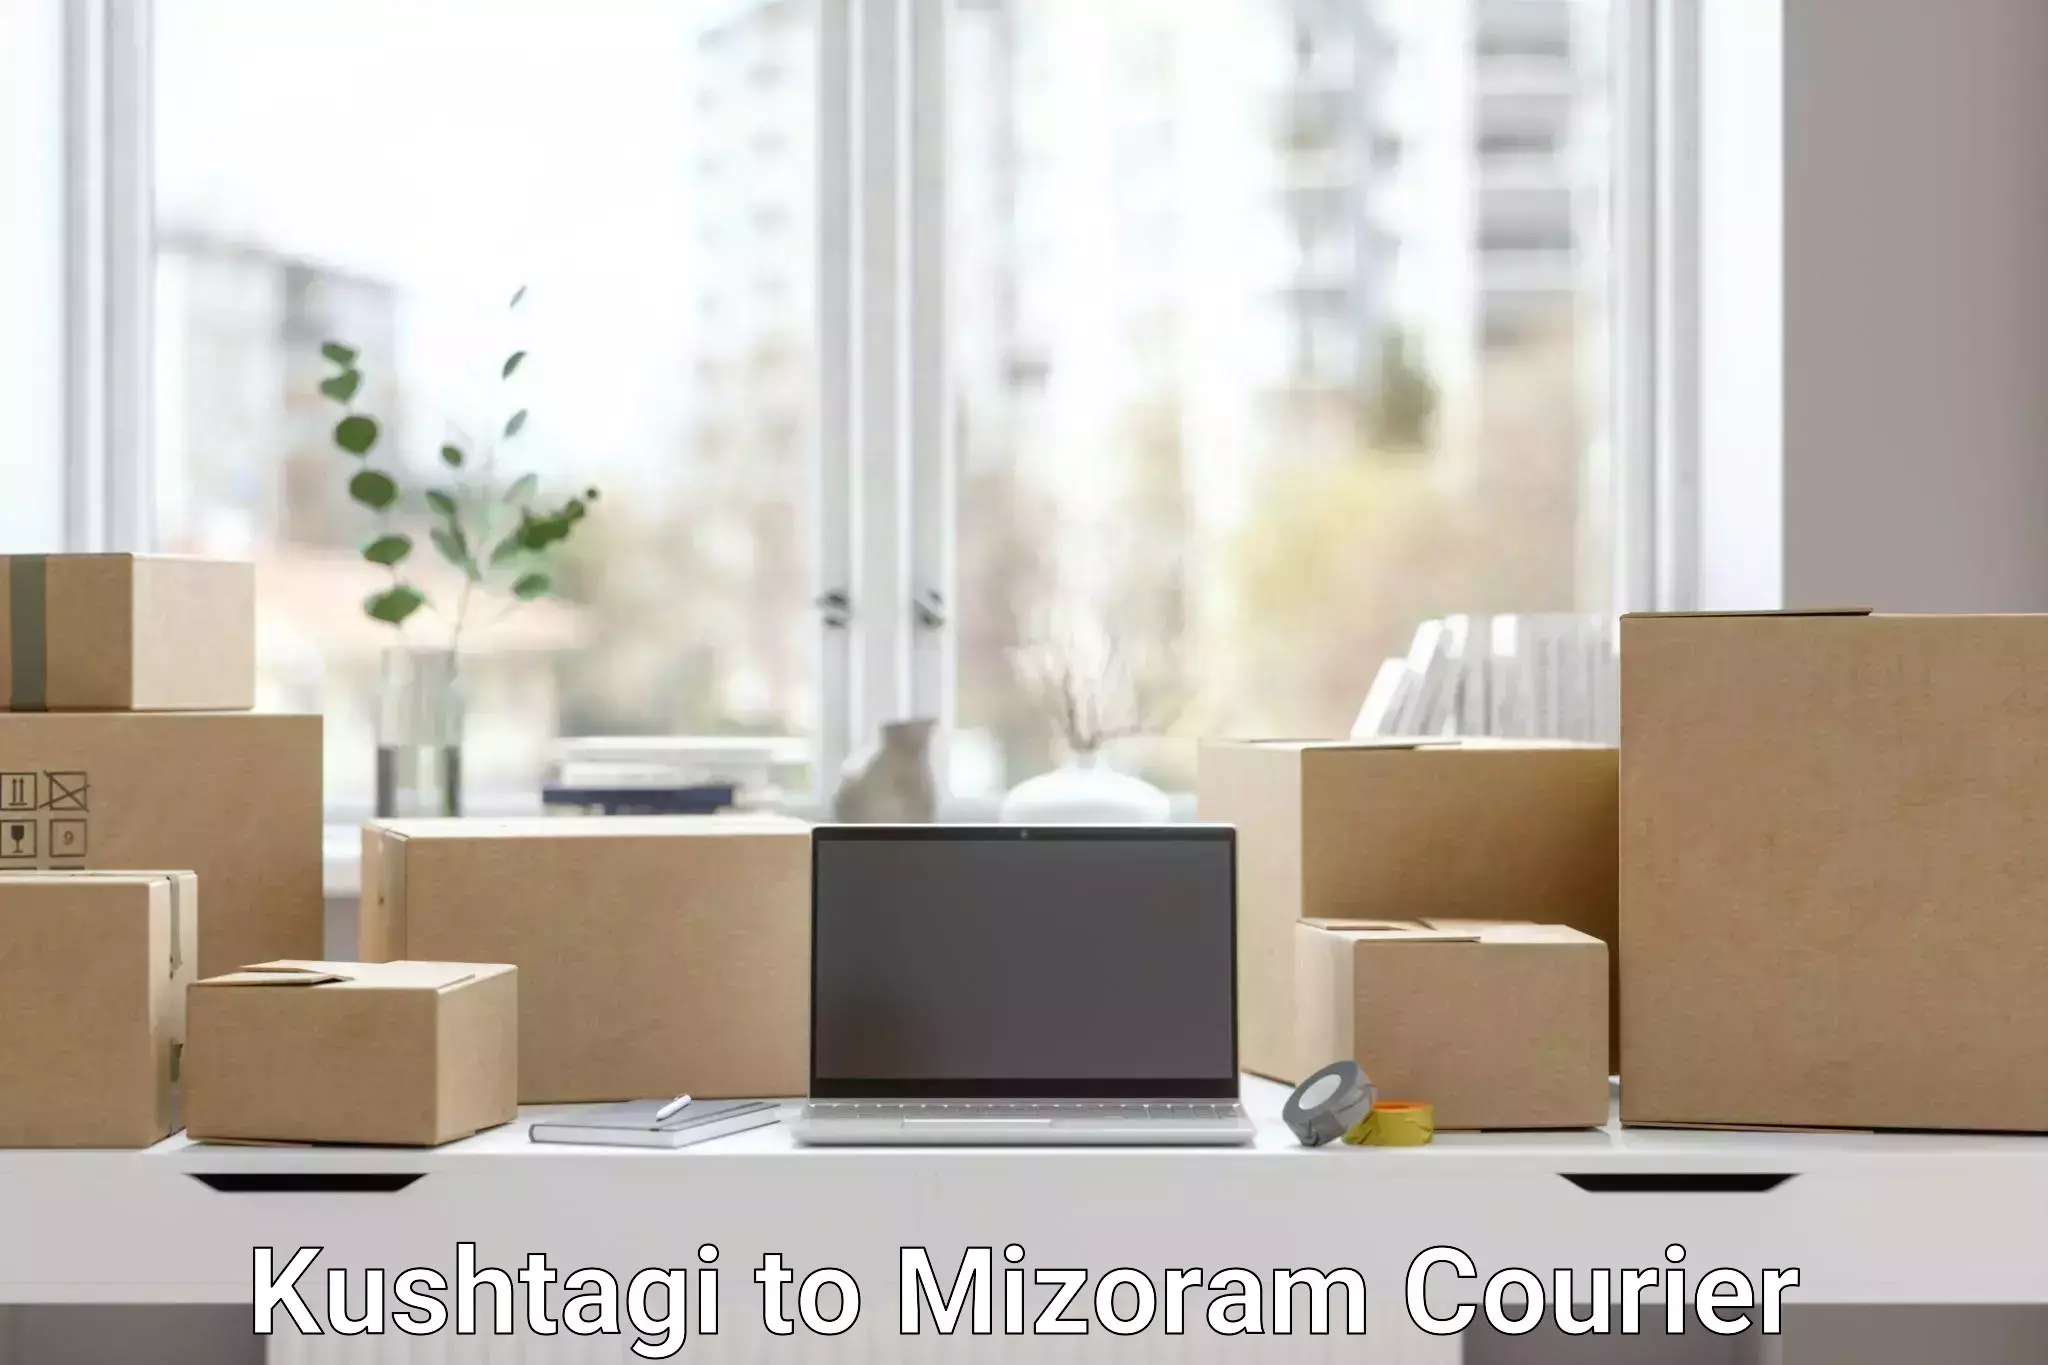 Courier service partnerships Kushtagi to Mizoram